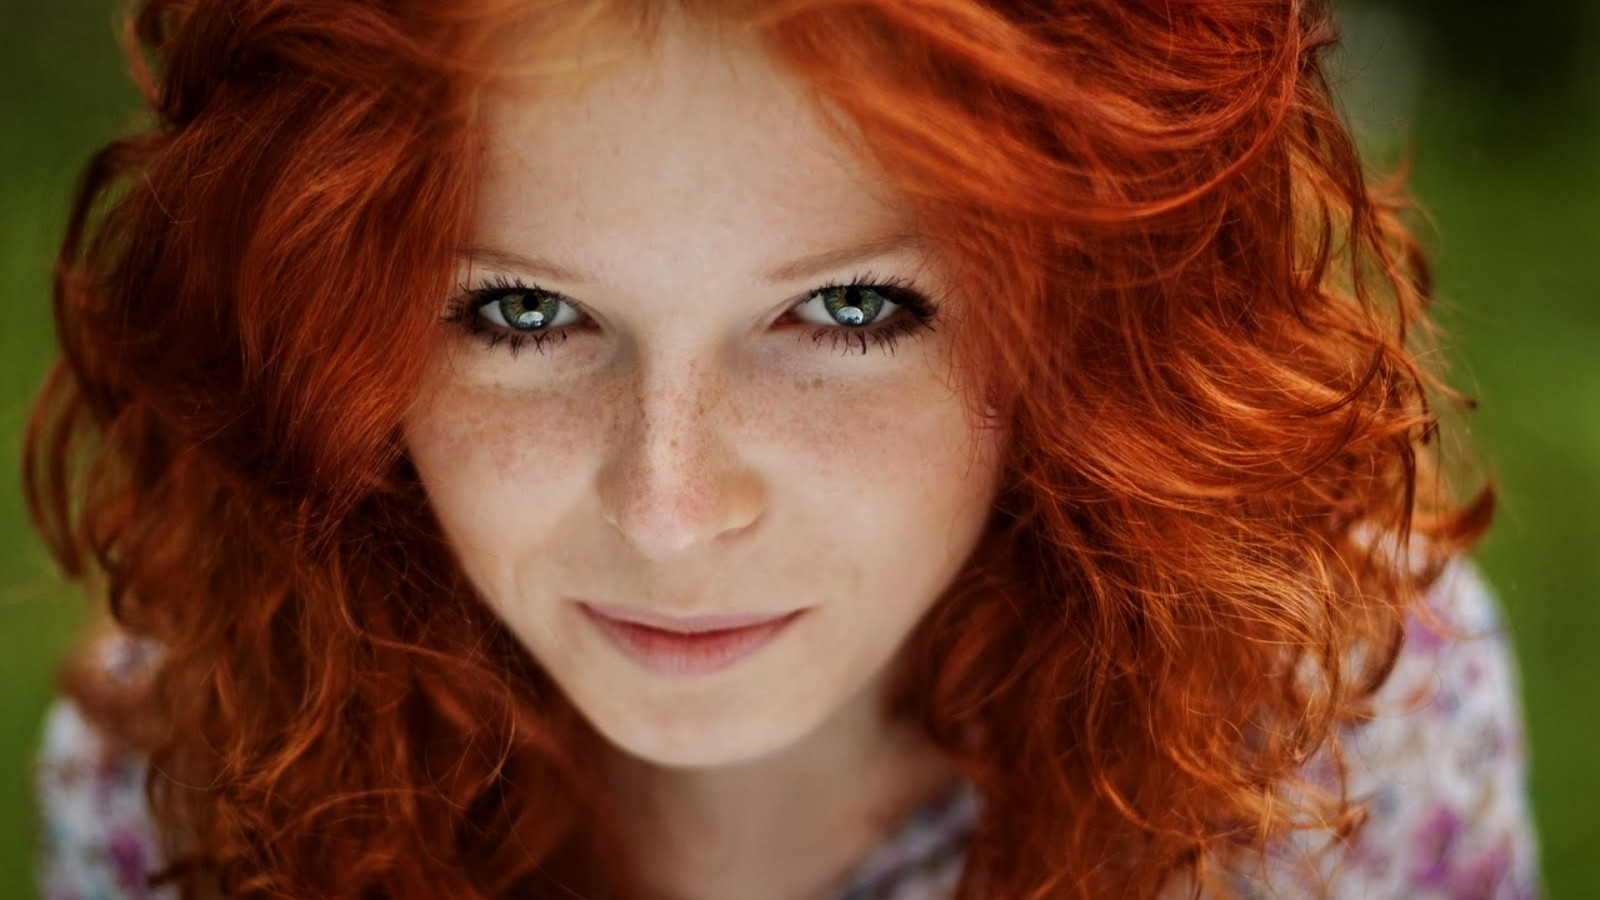 Tại sao những người có mái tóc đỏ lại có khả năng chịu đau tốt hơn những người khác? - Ảnh 1.